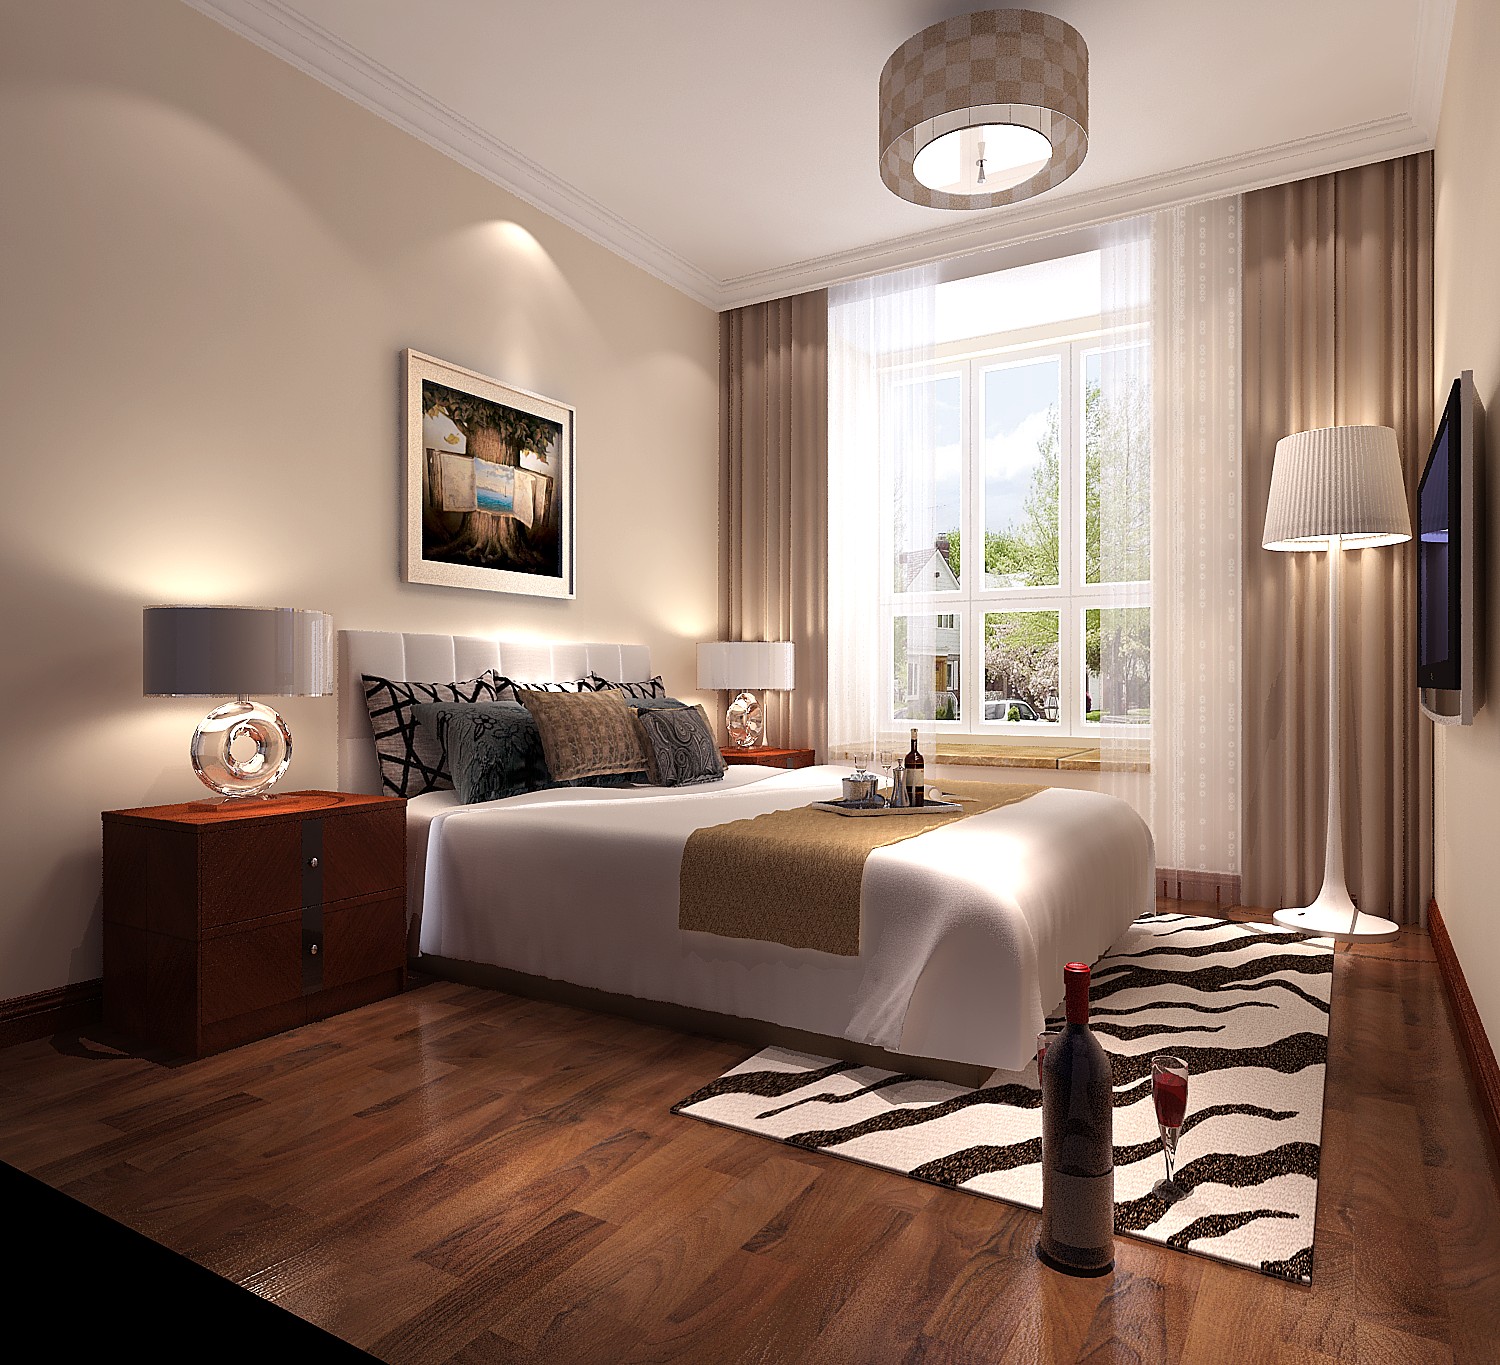 家居 红木家具 主角 中式 实用 卧室图片来自高度国际装饰刘玉在让家具成为主角的分享